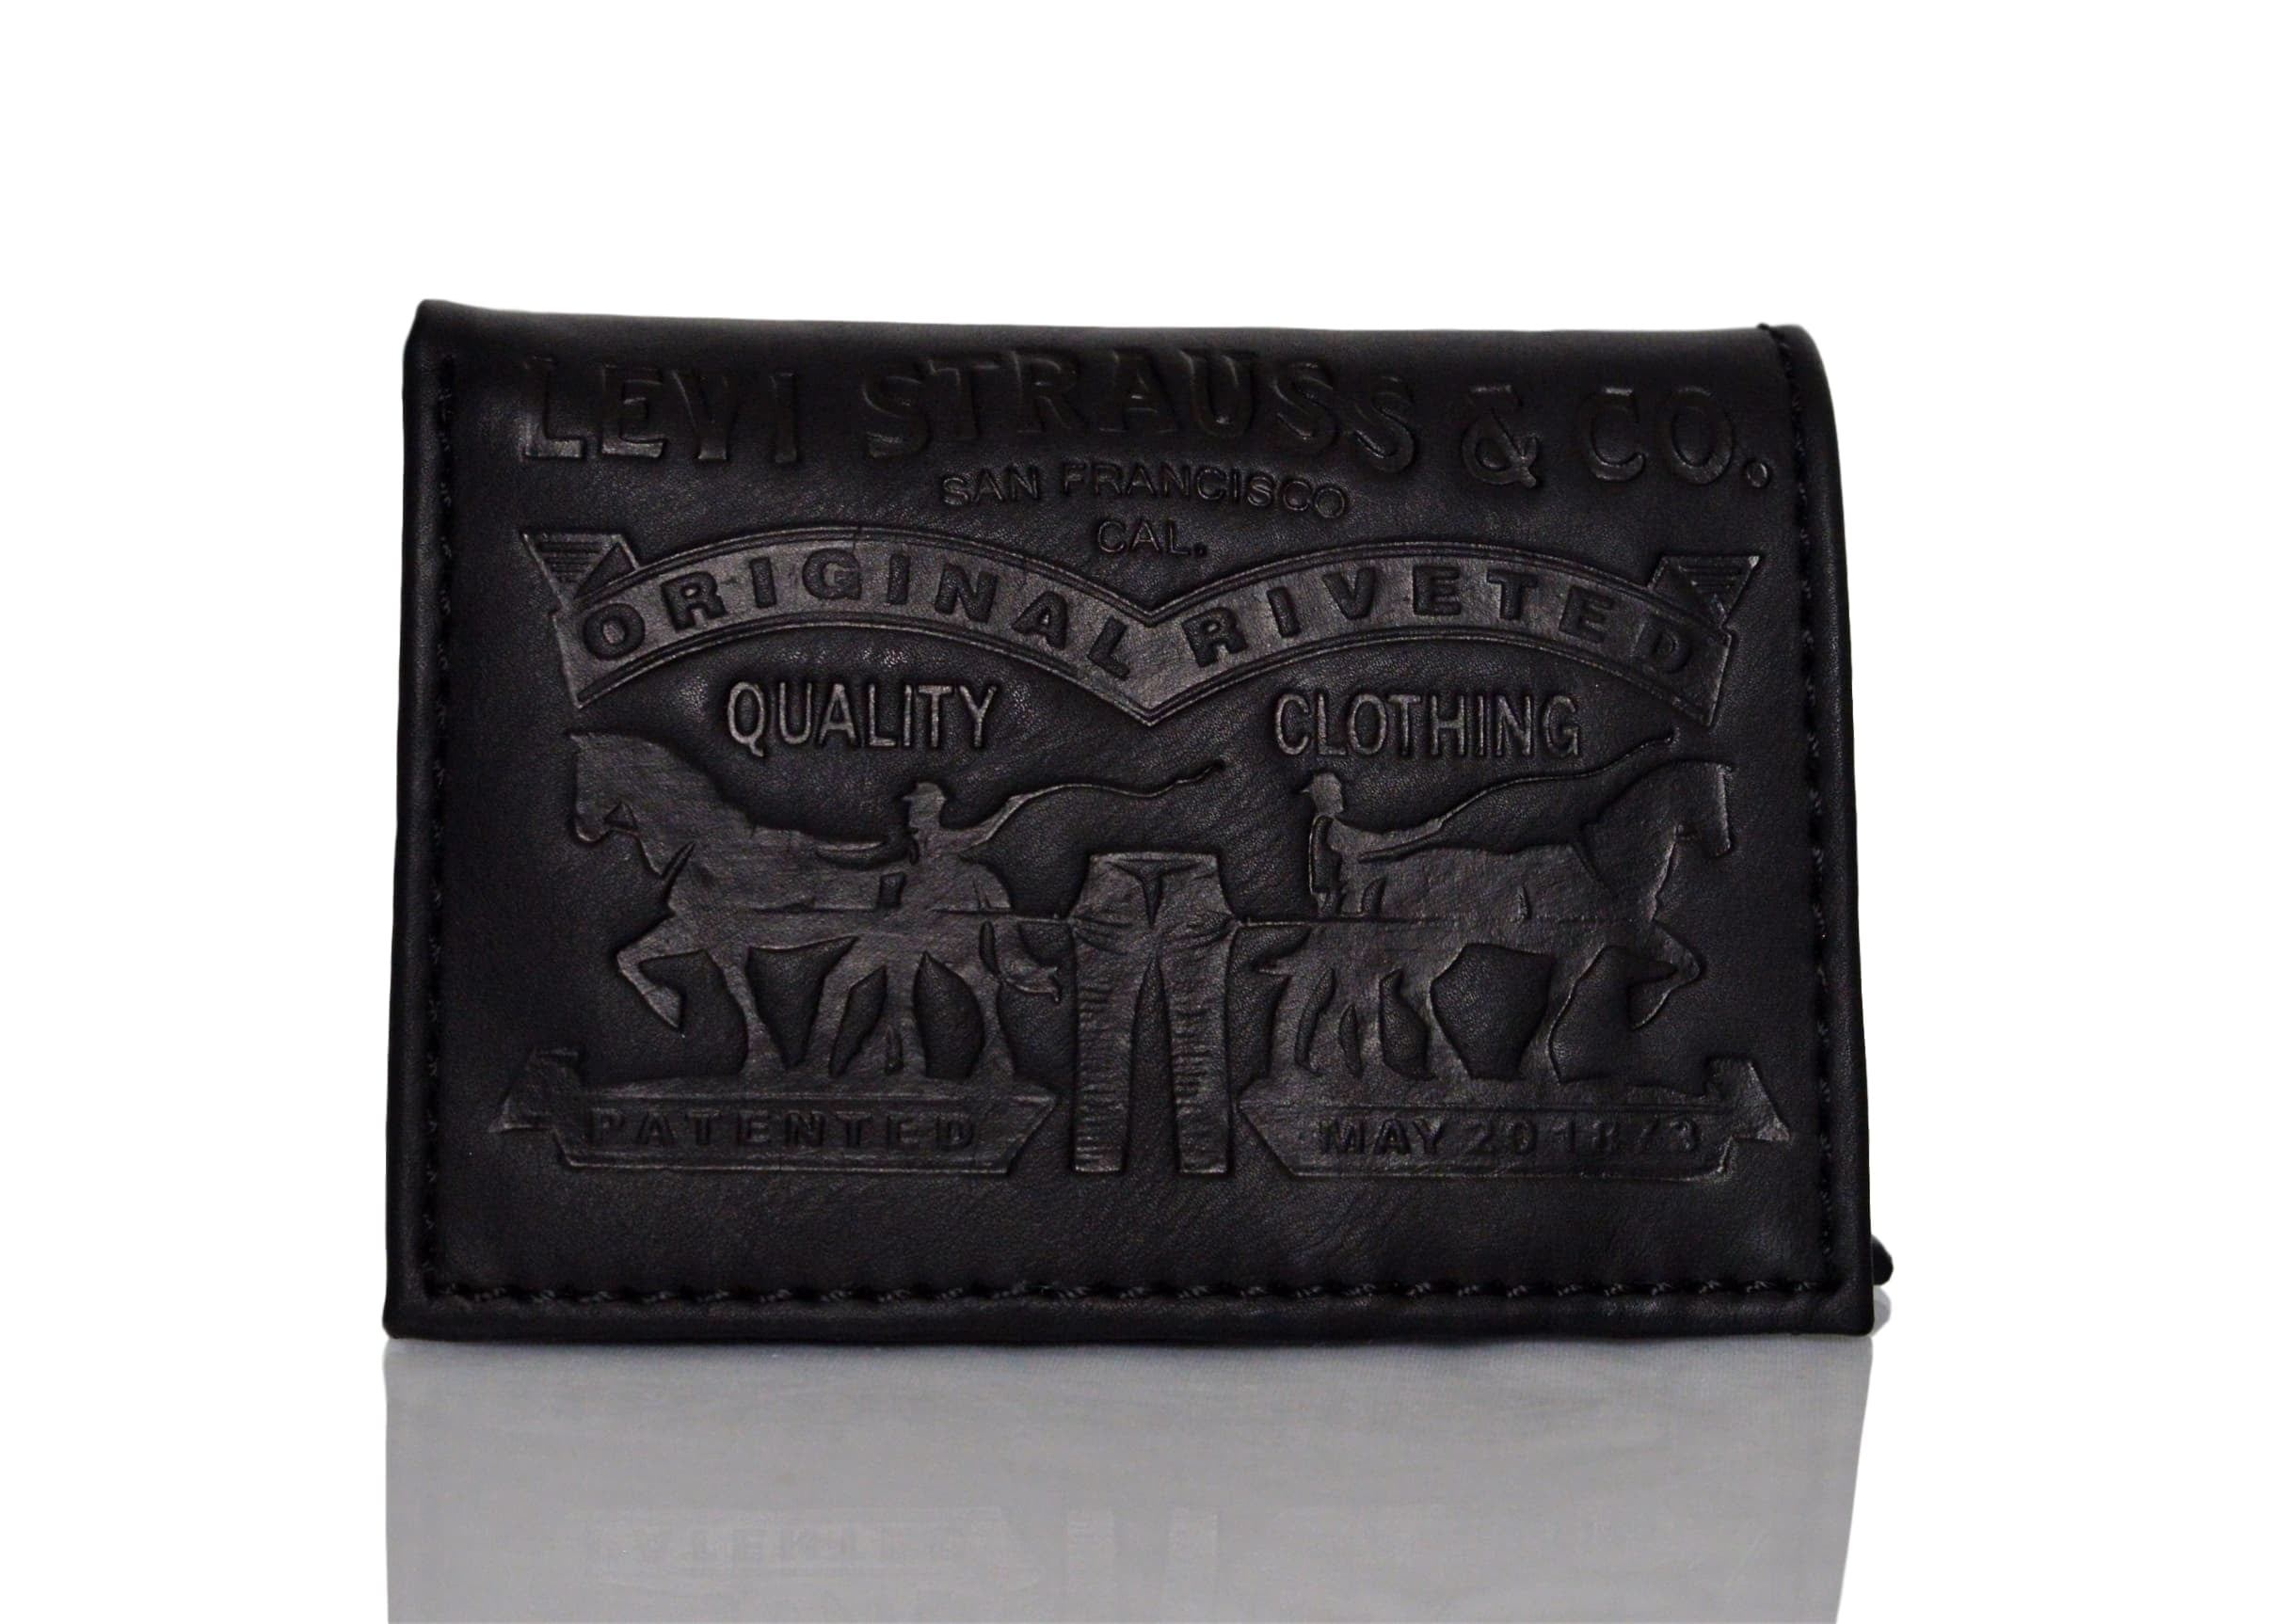 Buy Levis Men Brown Textured Zip Around Wallet - Wallets for Men 5568704 |  Myntra